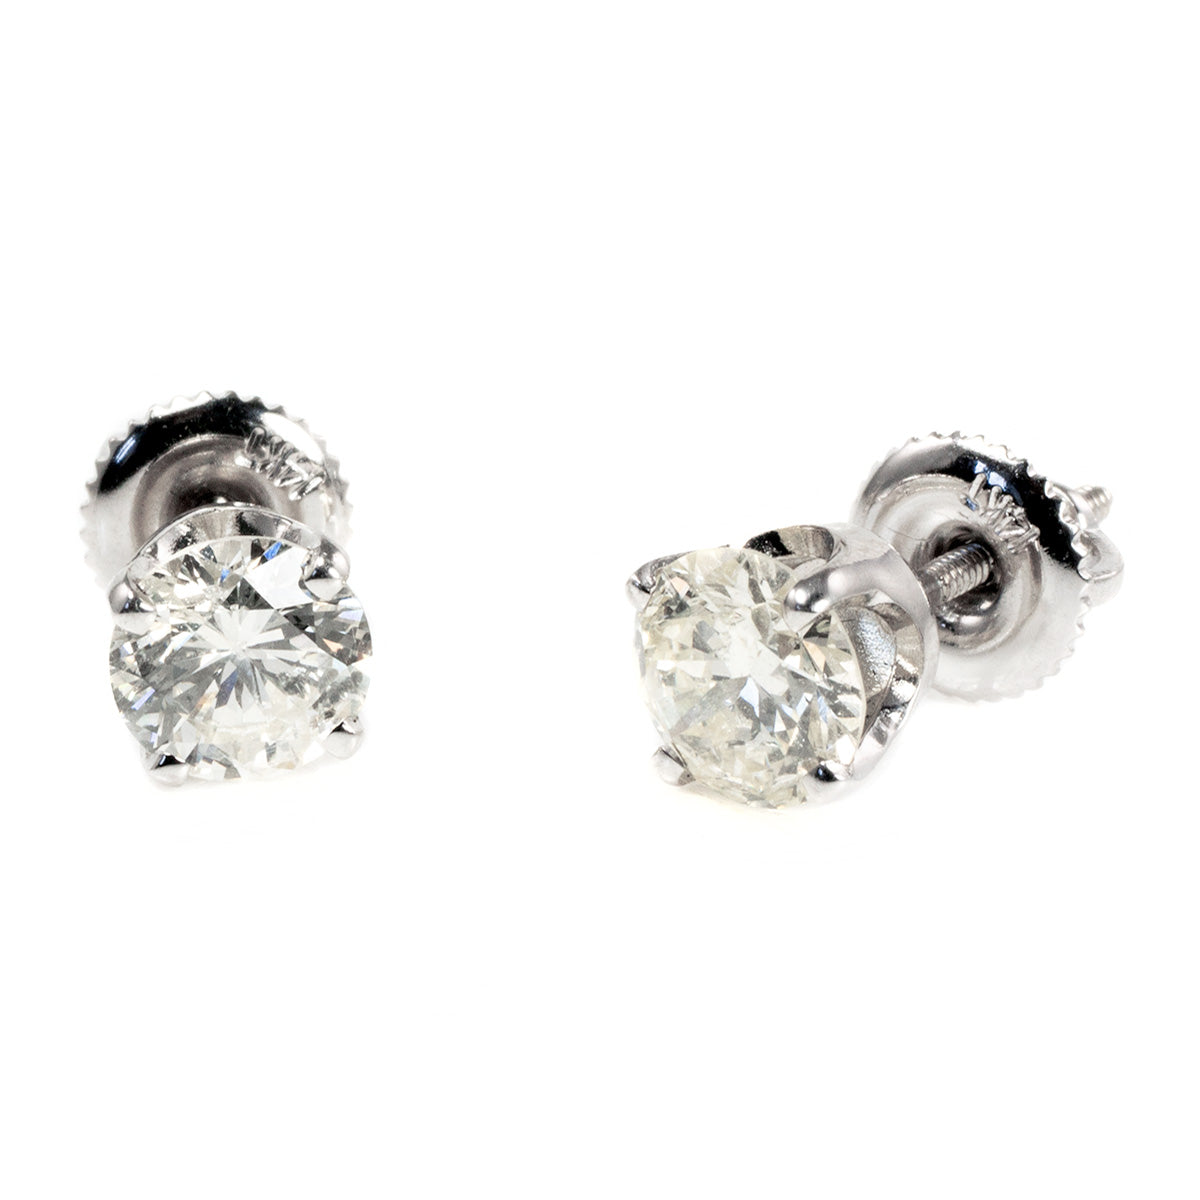 14 k White Gold 1.4 Carat Diamond Stud Earrings